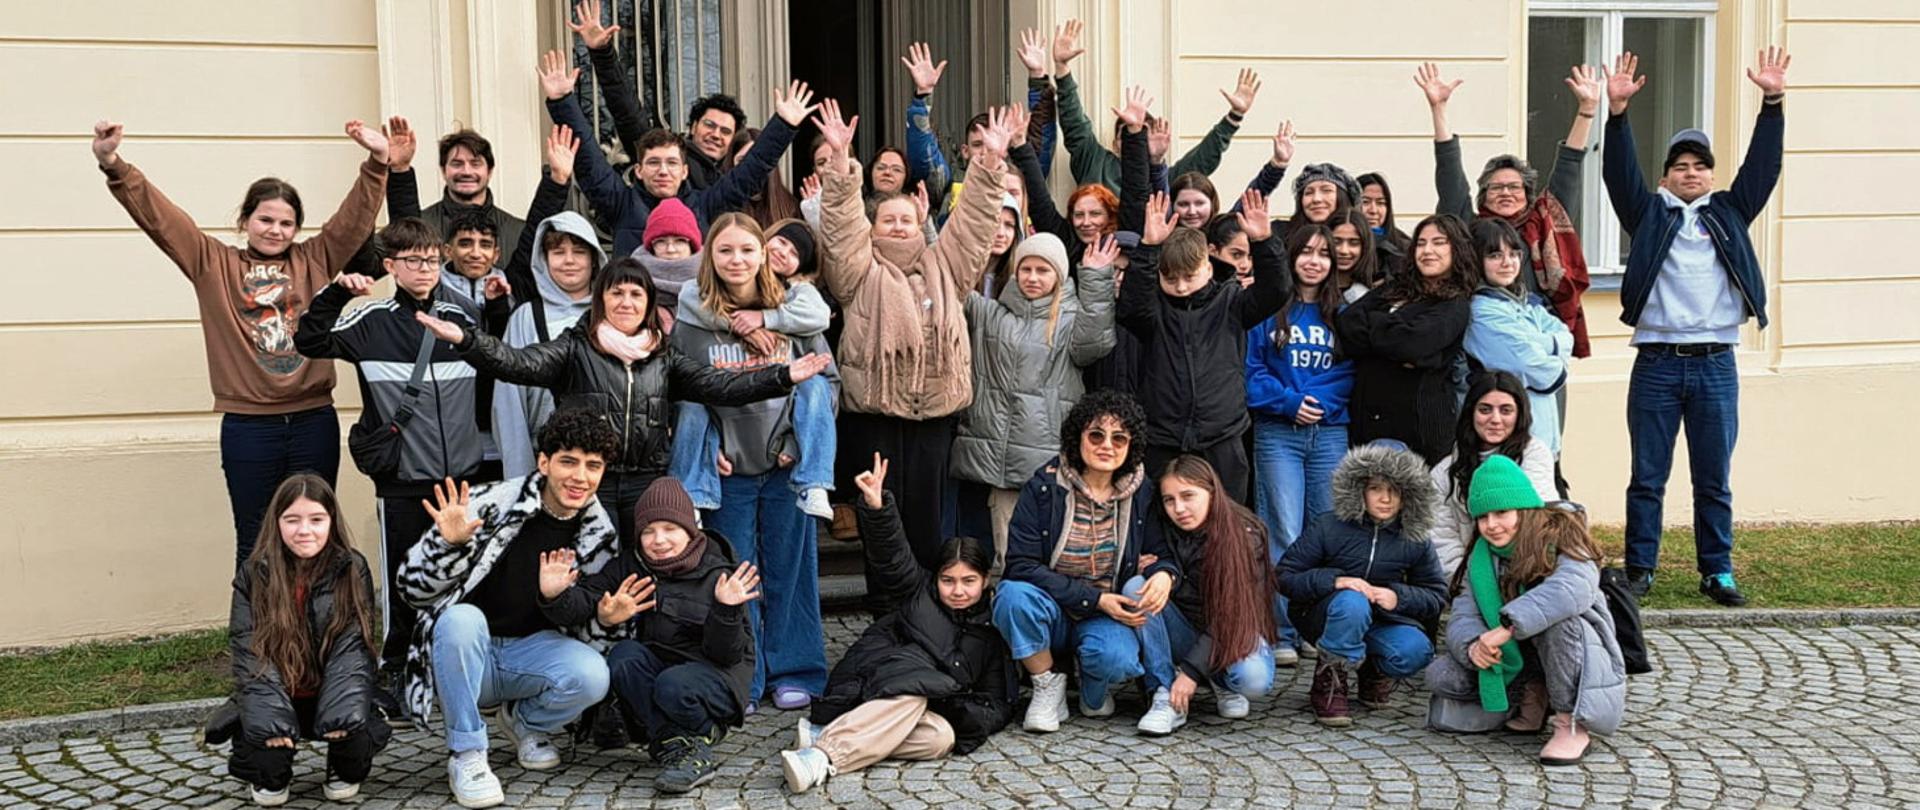 Na zdjęciu grupa kilkudziesięciu osób, dorosłych i dzieci. Osoby z przodu kucają i klęczą, osoby z tyłu stoją, część z osób ma uniesione ręce do góry. Za nimi jakiś budynek.